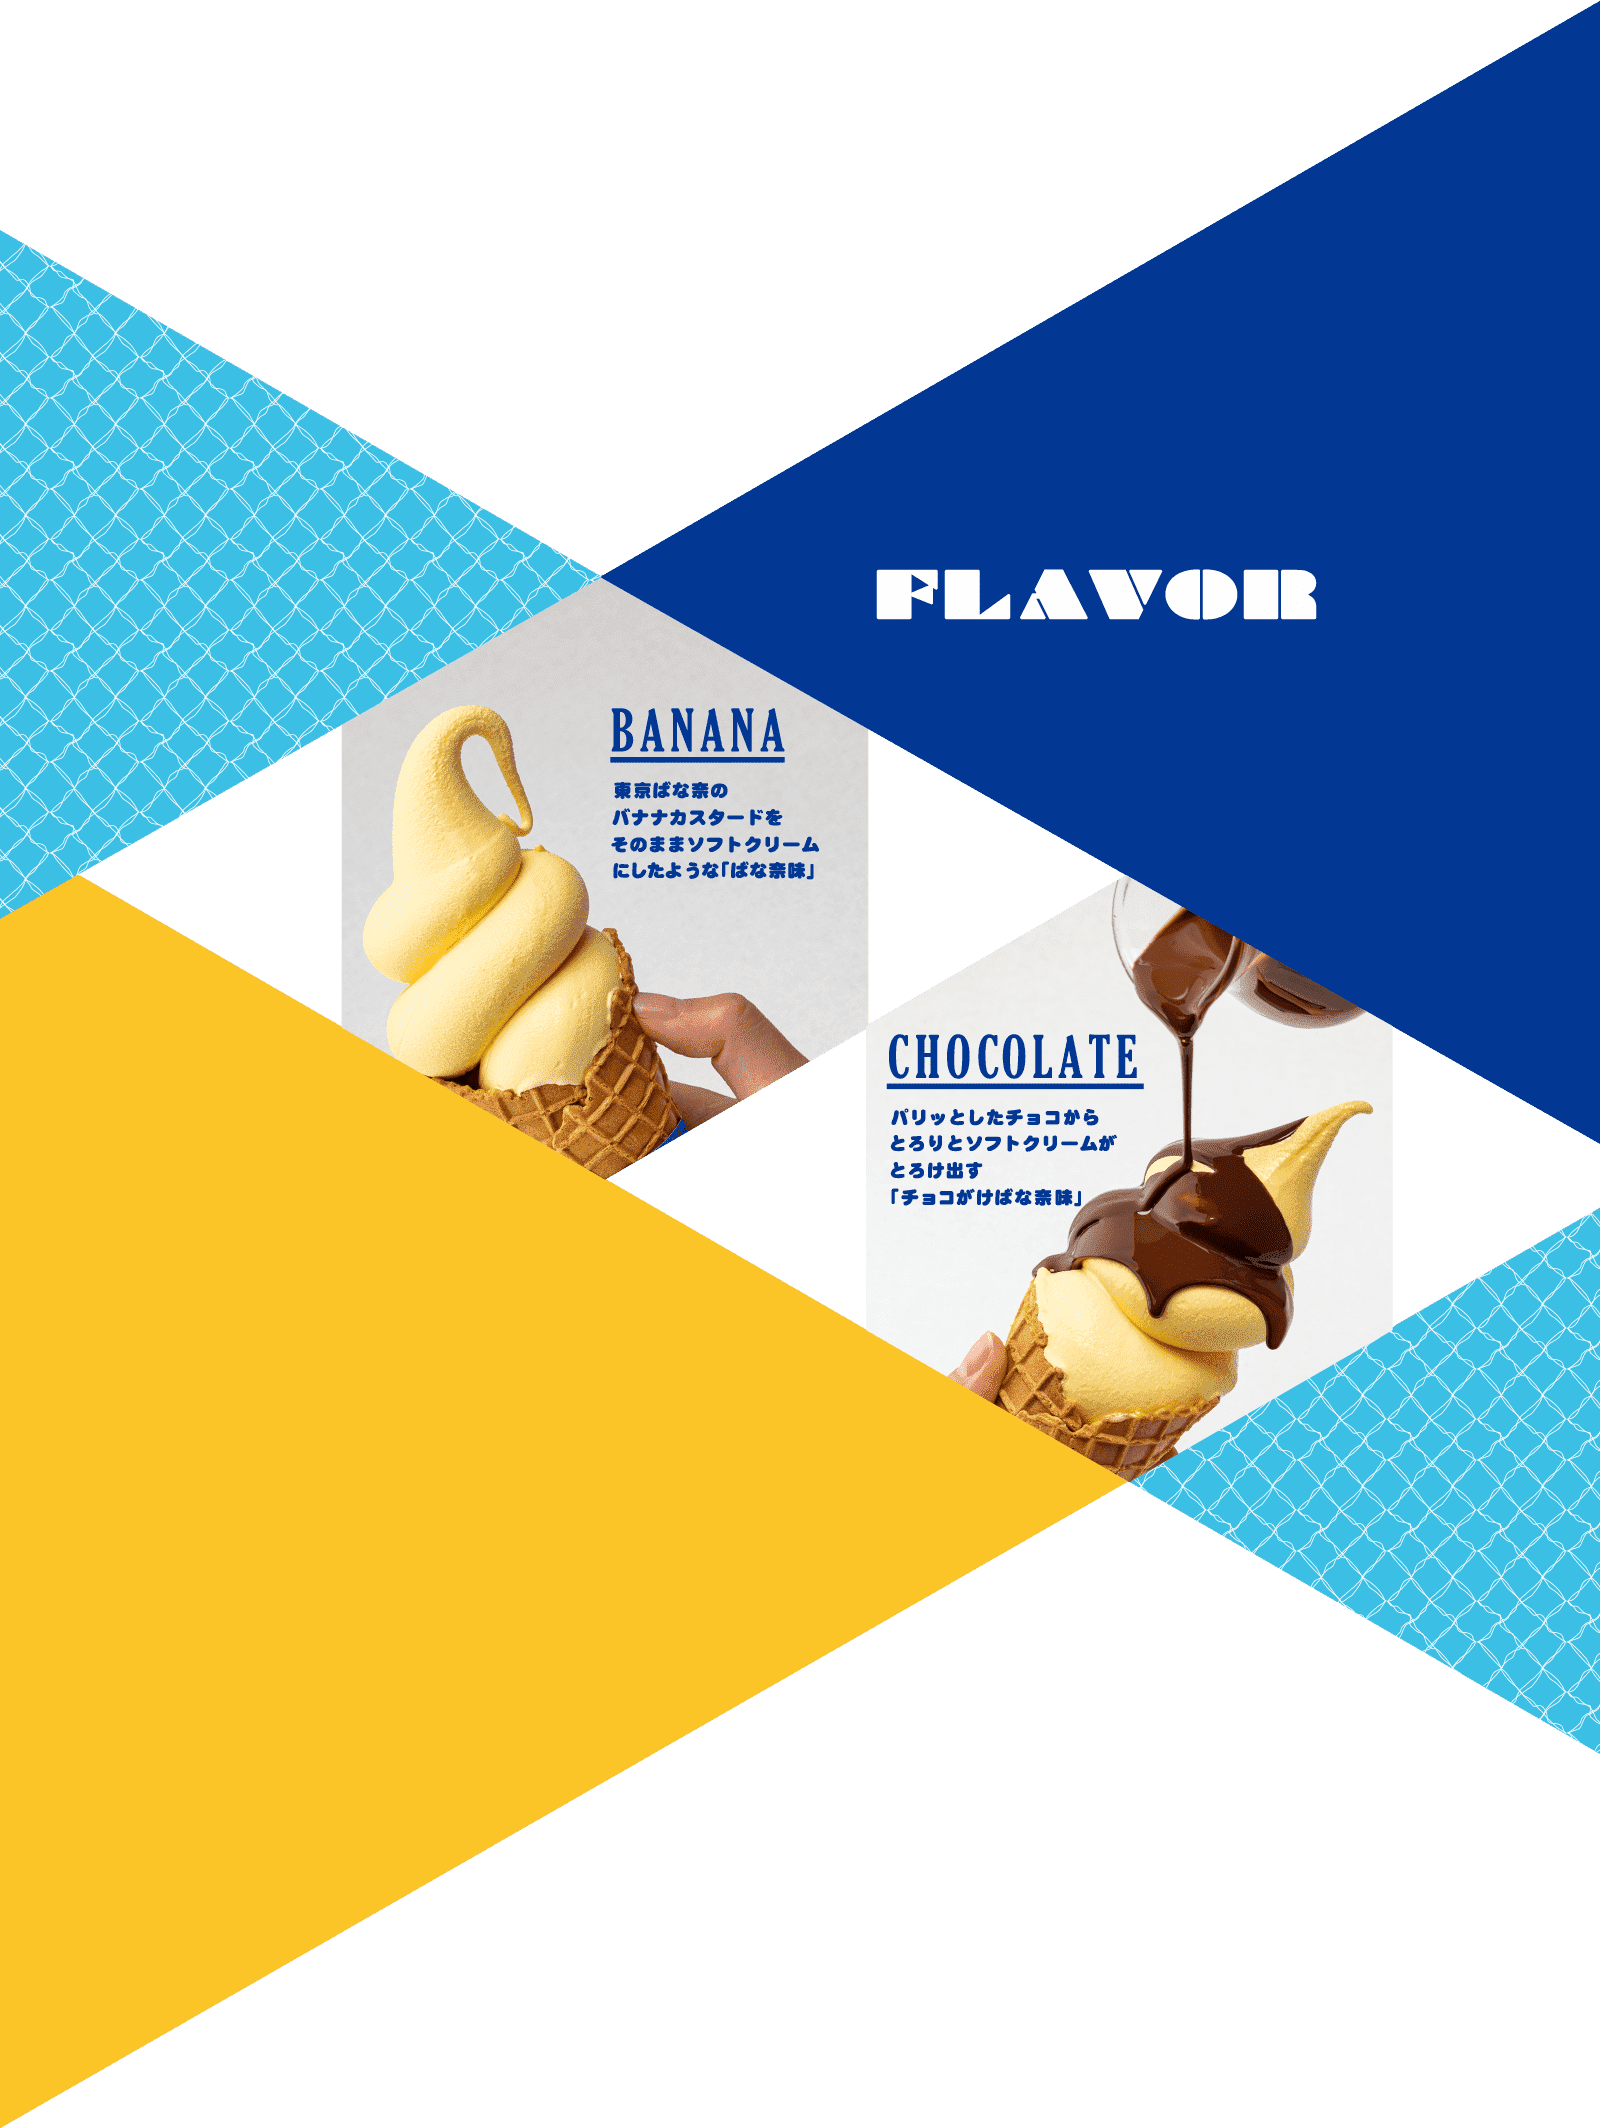 FLAVOR　BANANA 東京ばな奈のバナナカスタードをそのままソフトクリームにしたような「ばな奈味」　CHOCOLATE パリッとしたチョコからとろりとソフトクリームがとろけ出す「チョコがけばな奈味」